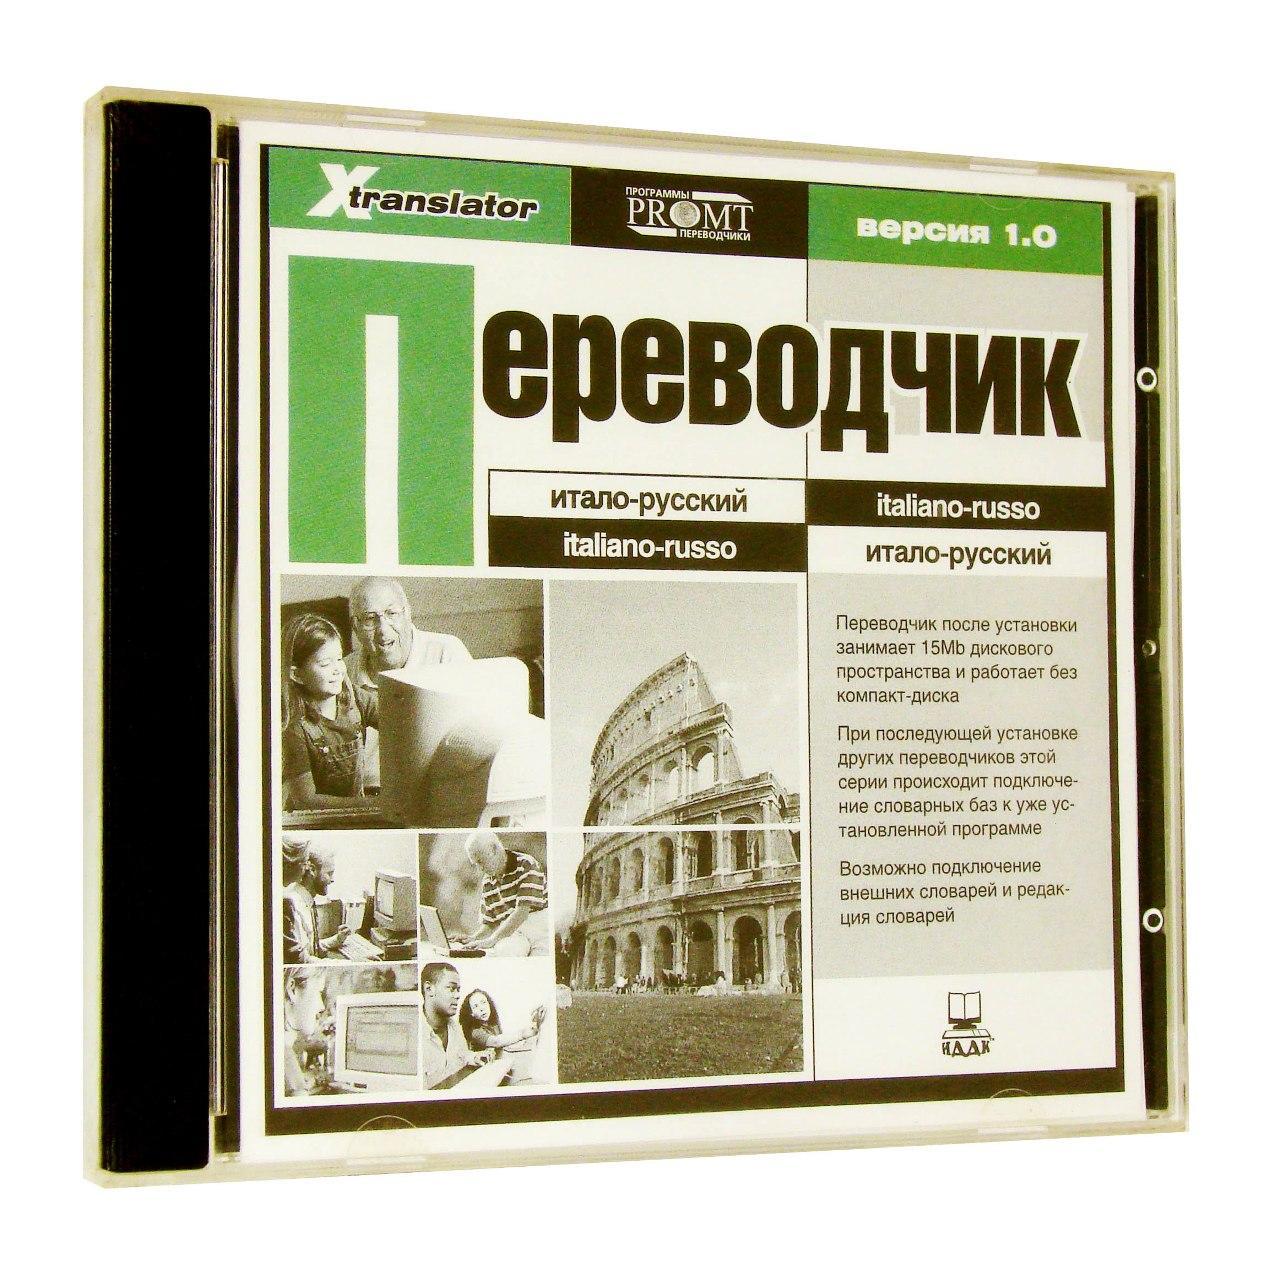 Компьютерный компакт-диск Итало-русский переводчик (ПК), фирма "ИДДК", 1CD